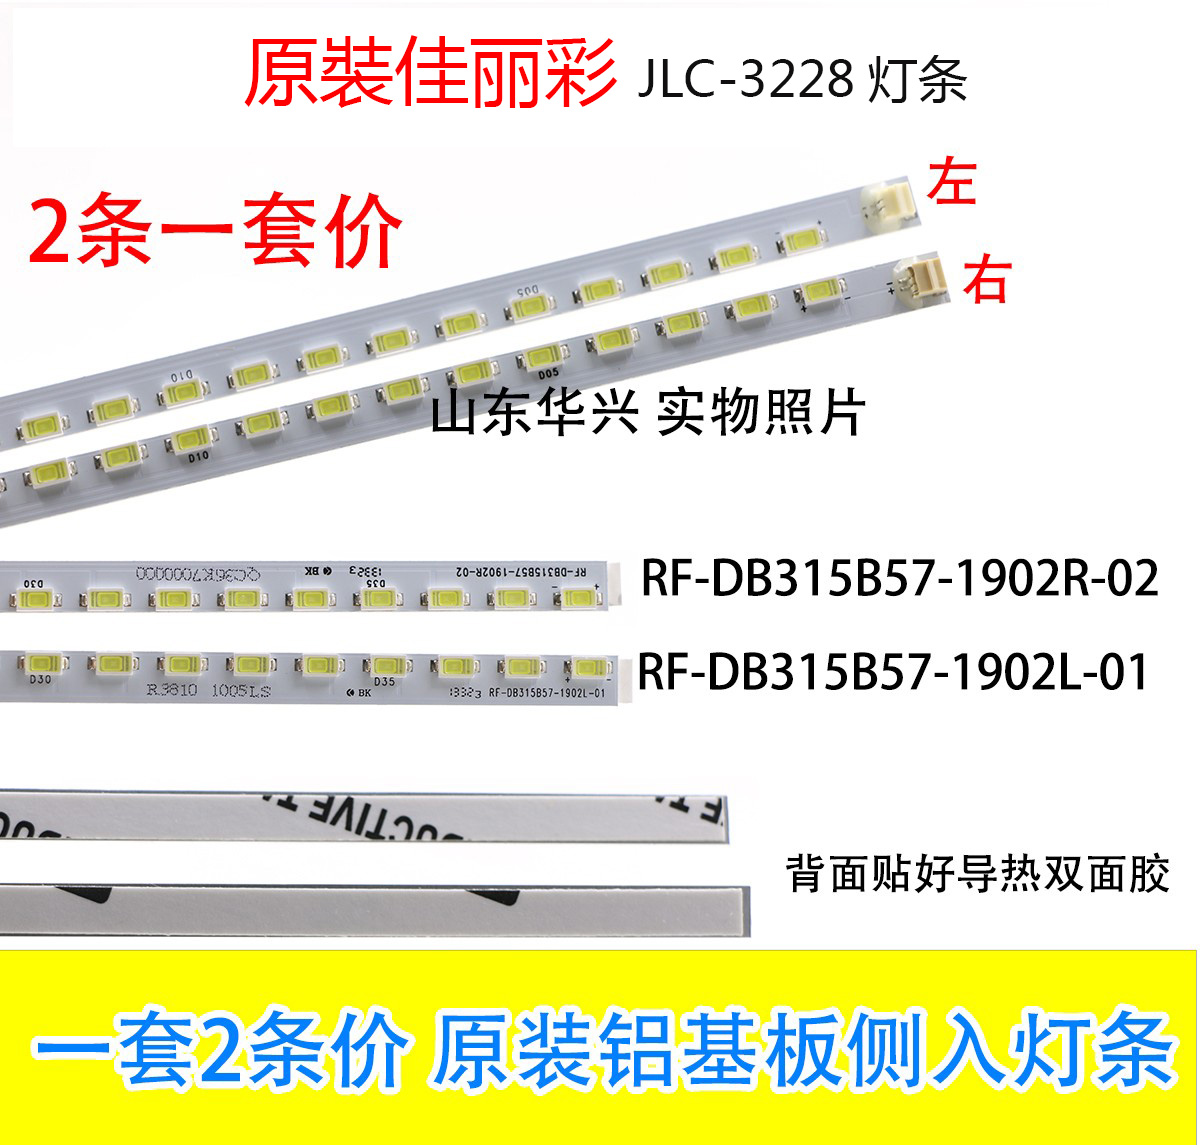 佳丽彩JLC-3228灯条RF-DB315B57-1902R/L-01/02 2条灯条一套价 电子元器件市场 显示屏/LCD液晶屏/LED屏/TFT屏 原图主图